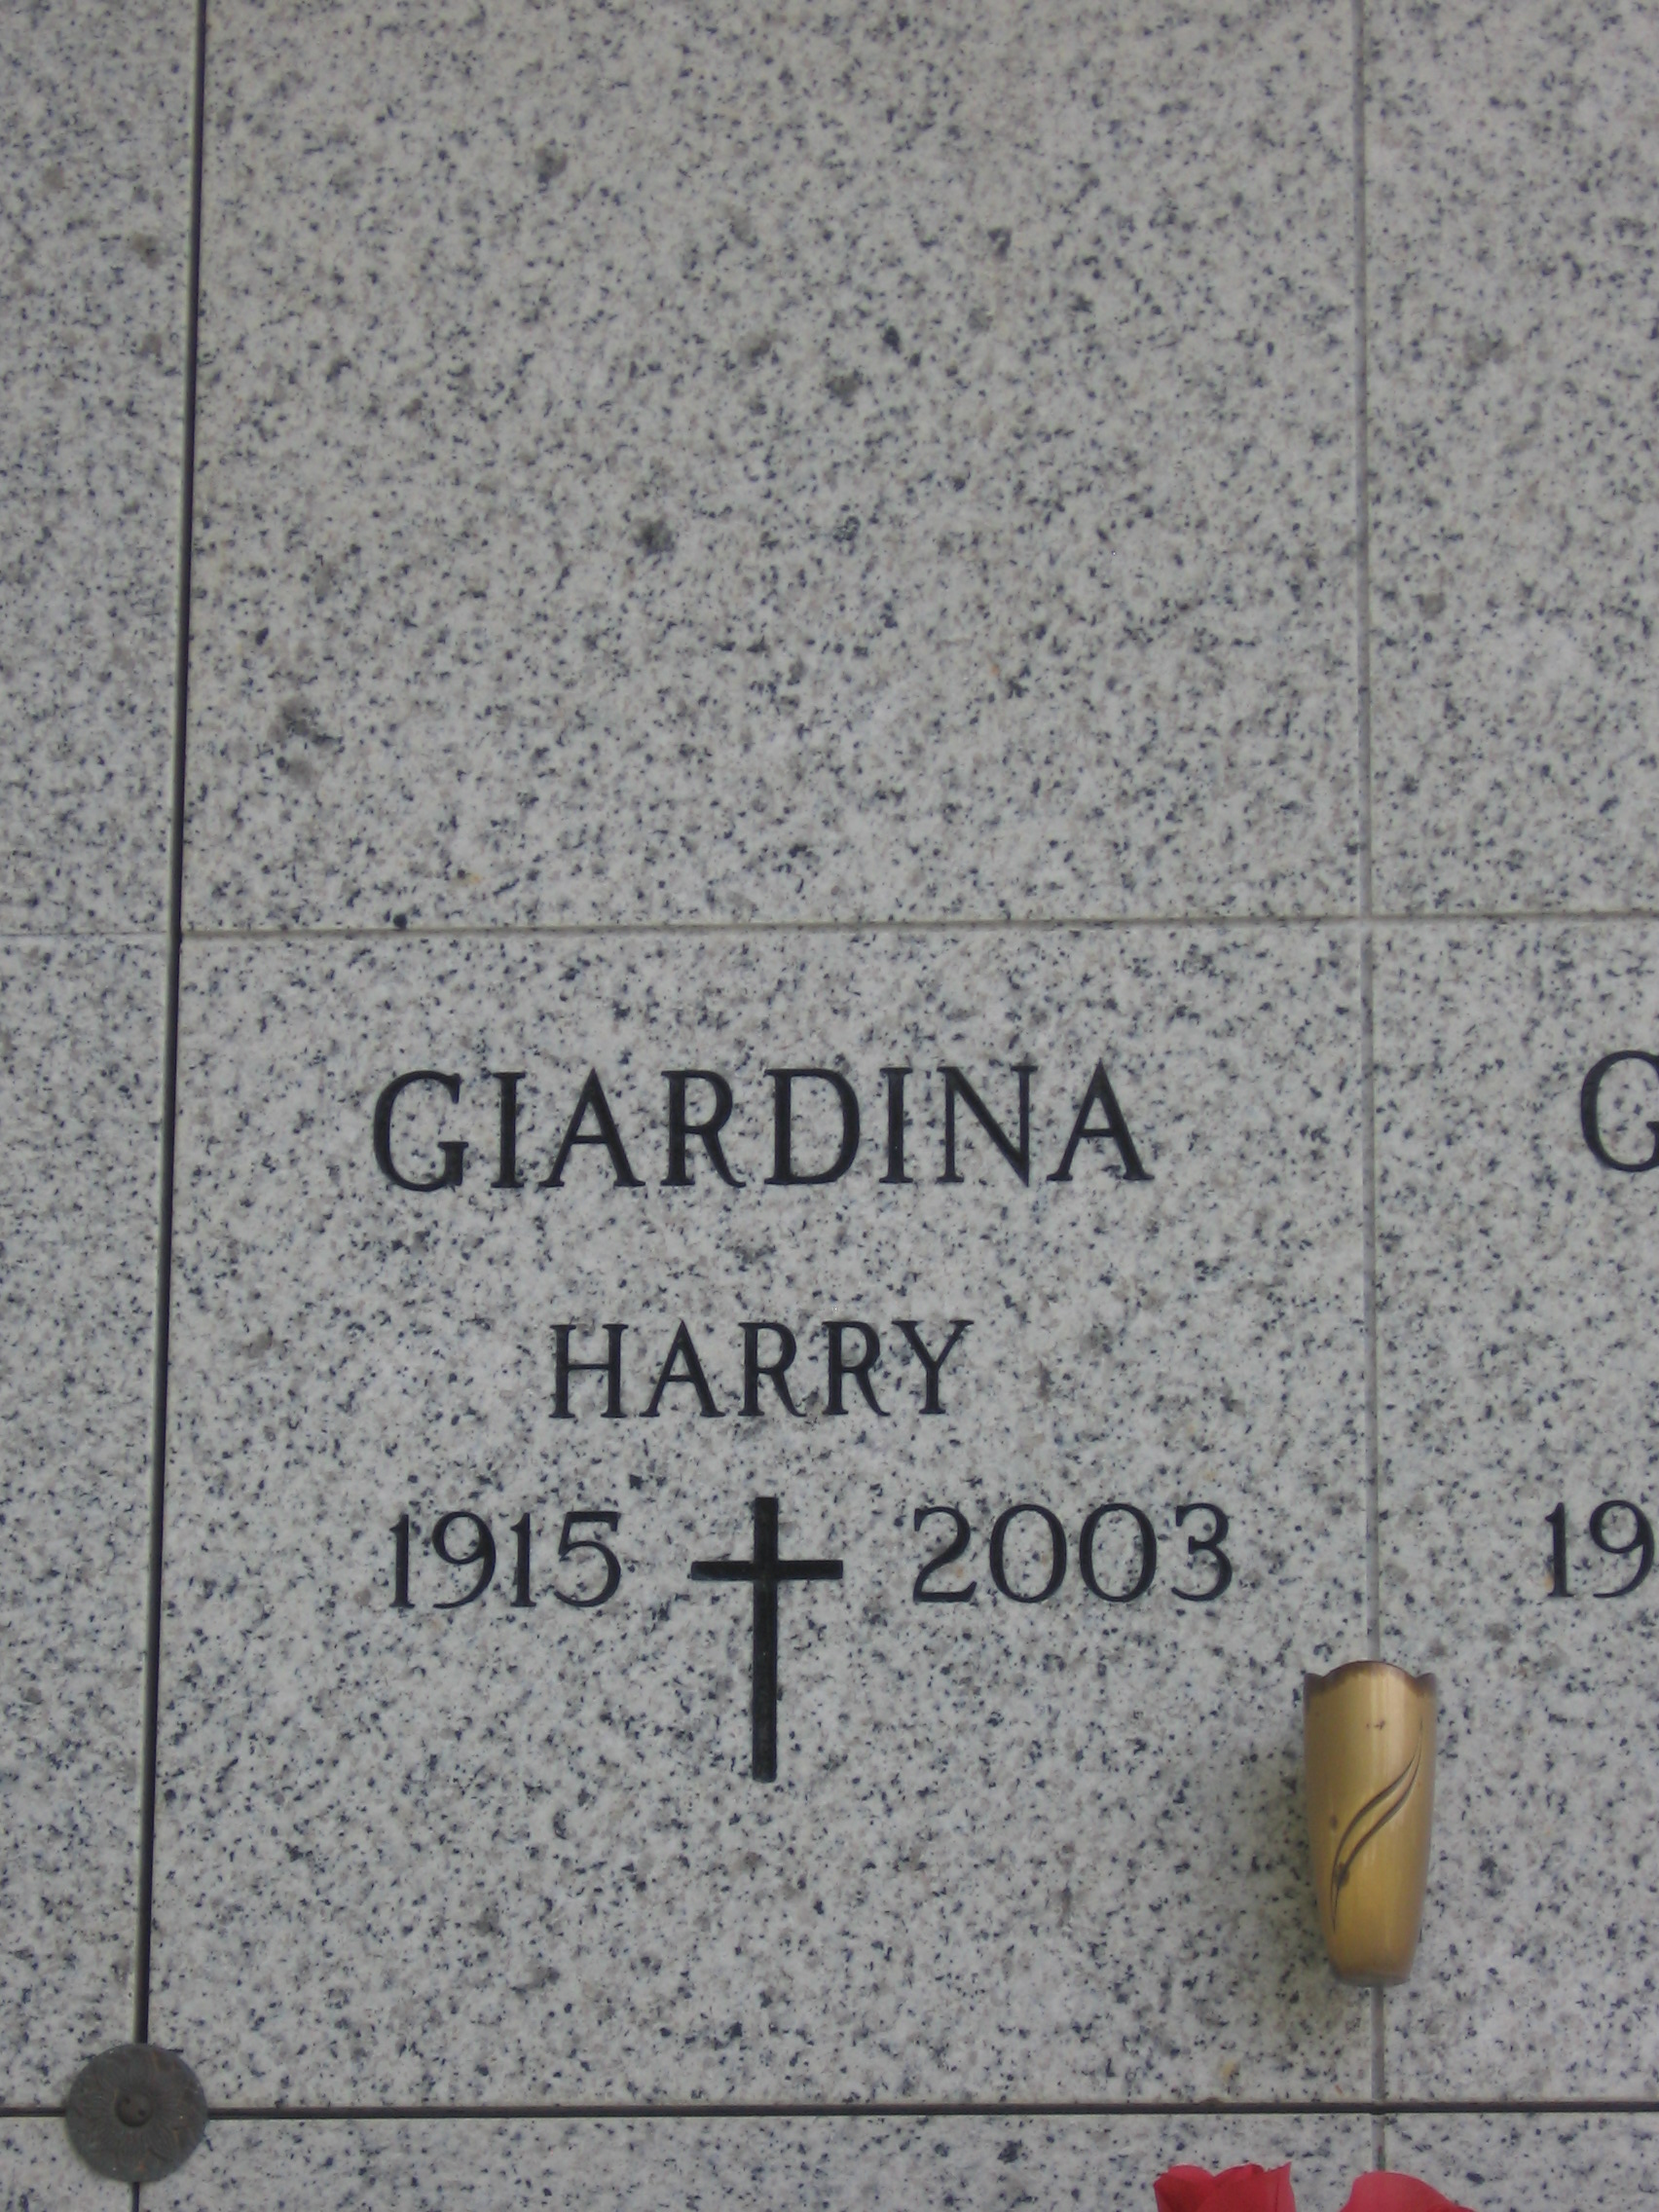 Harry Giardina